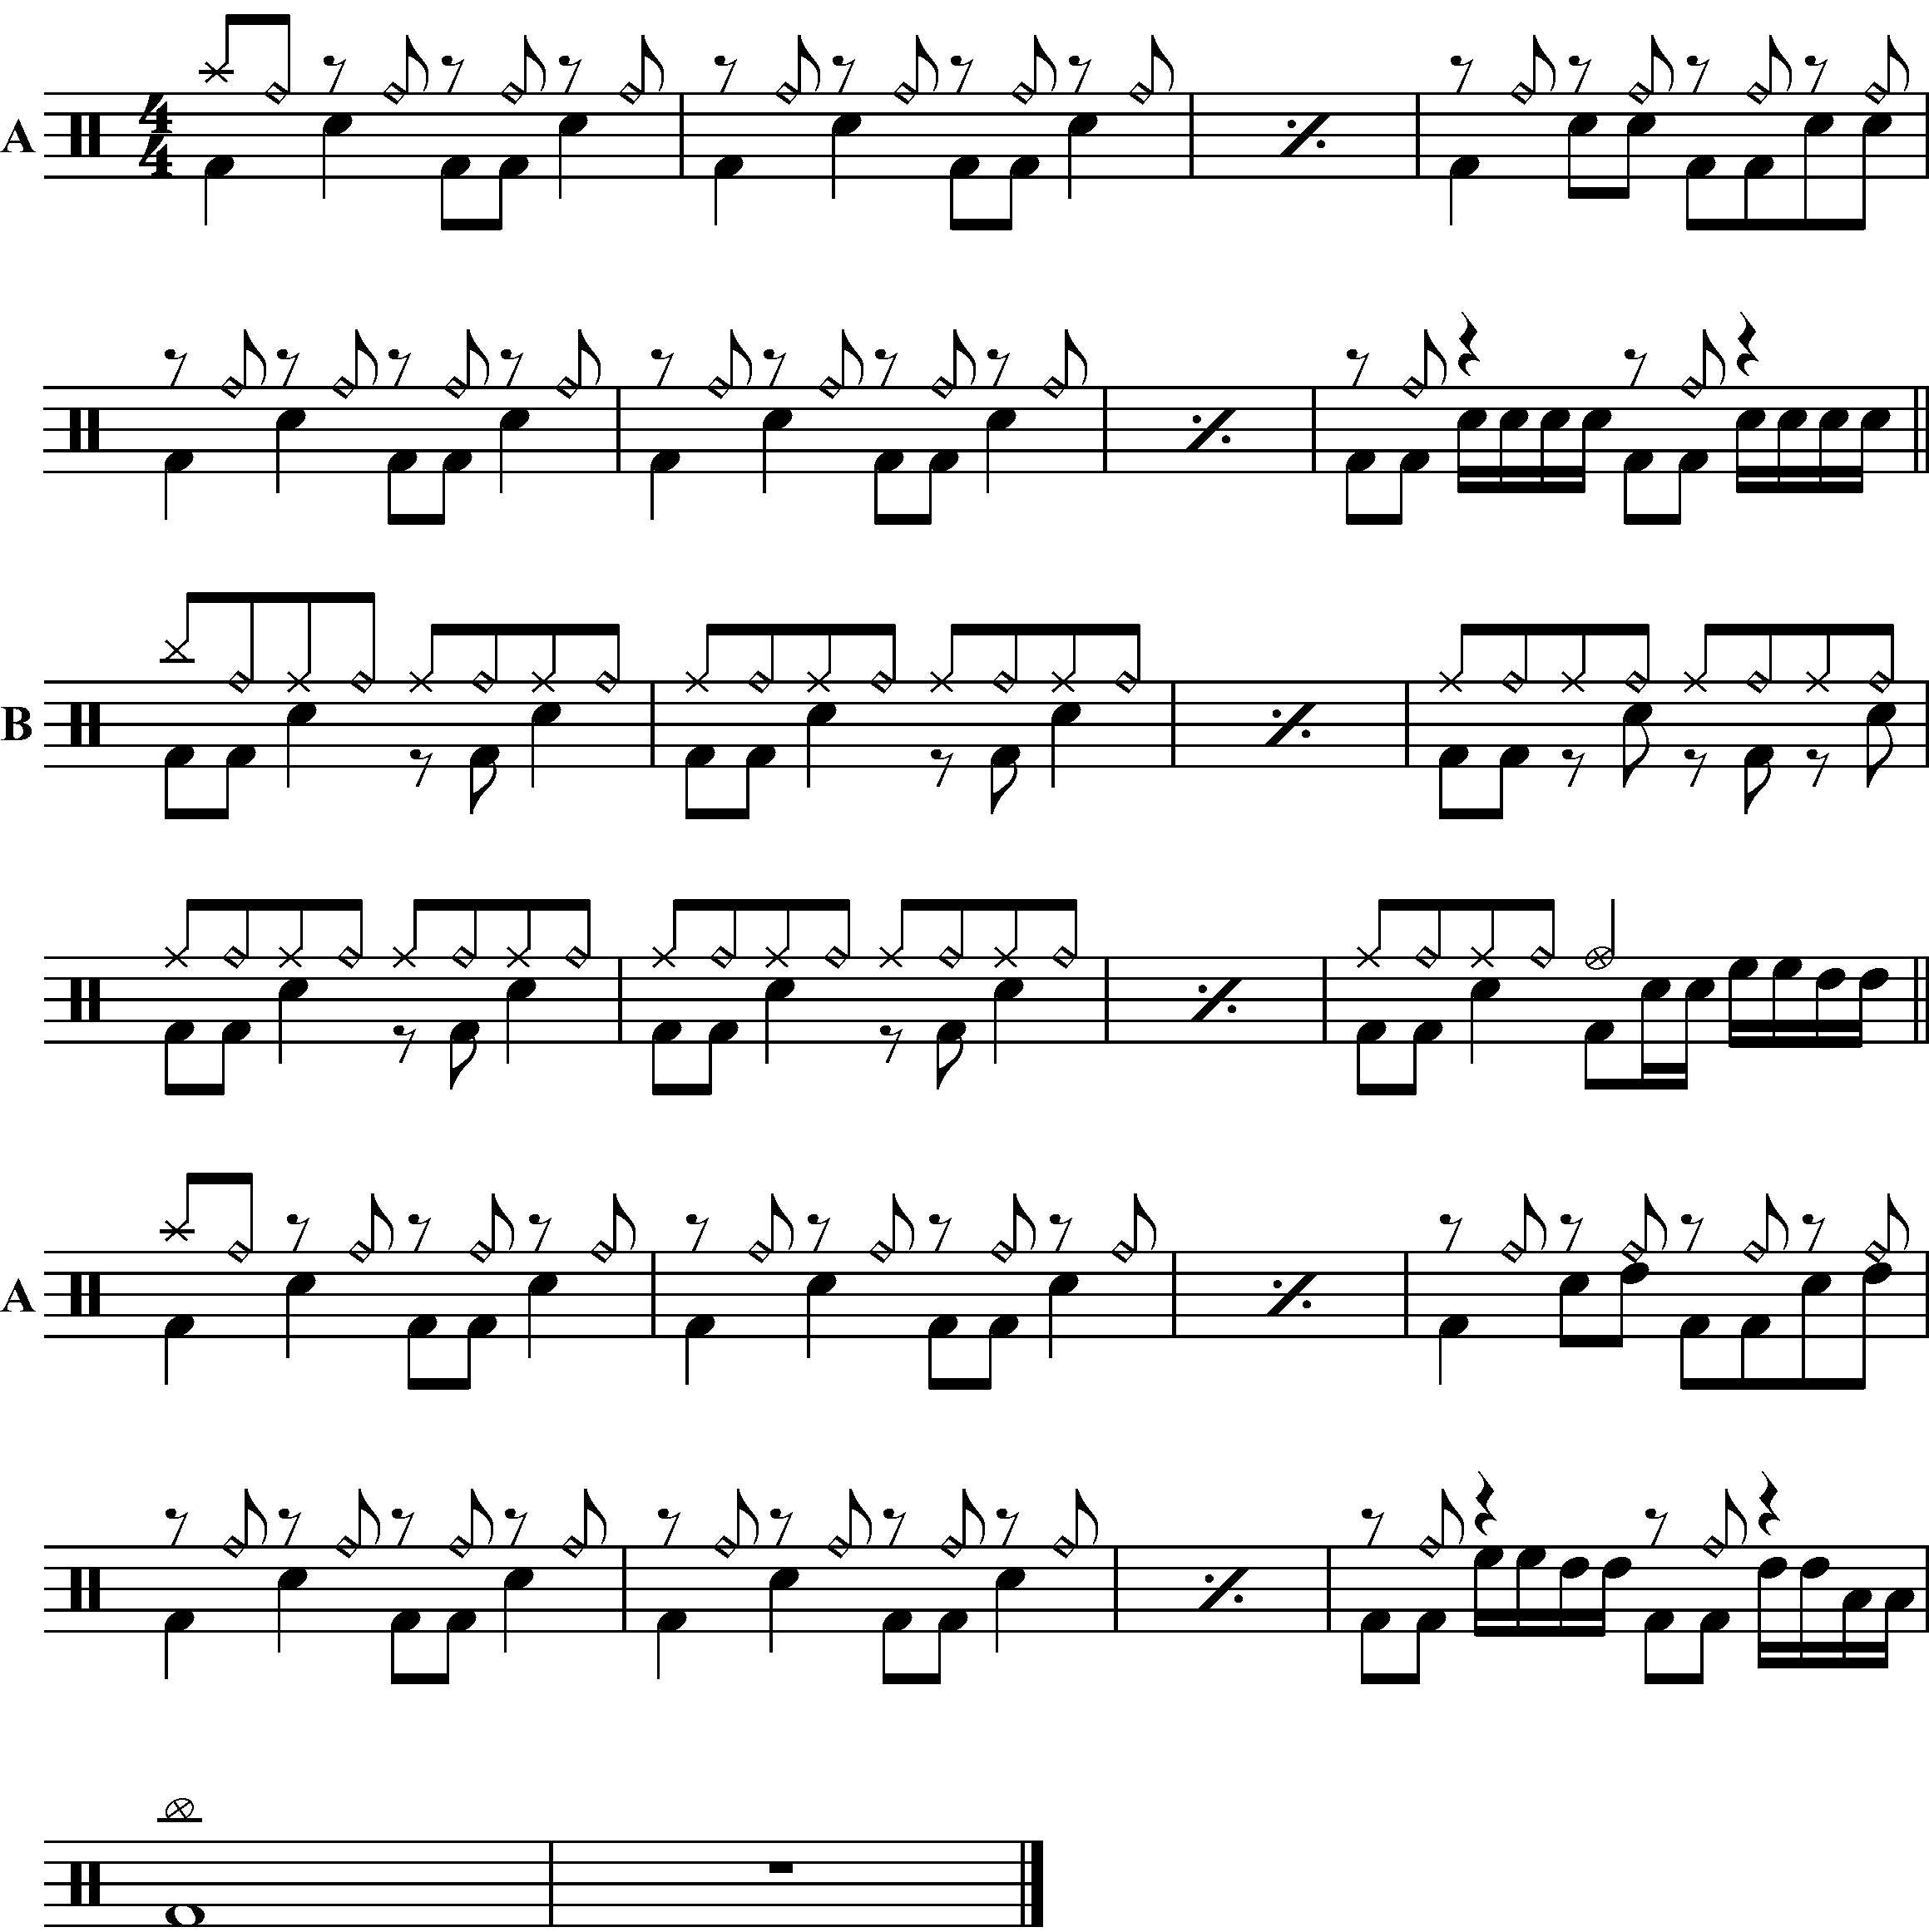 A short piece using offbeat ride bells